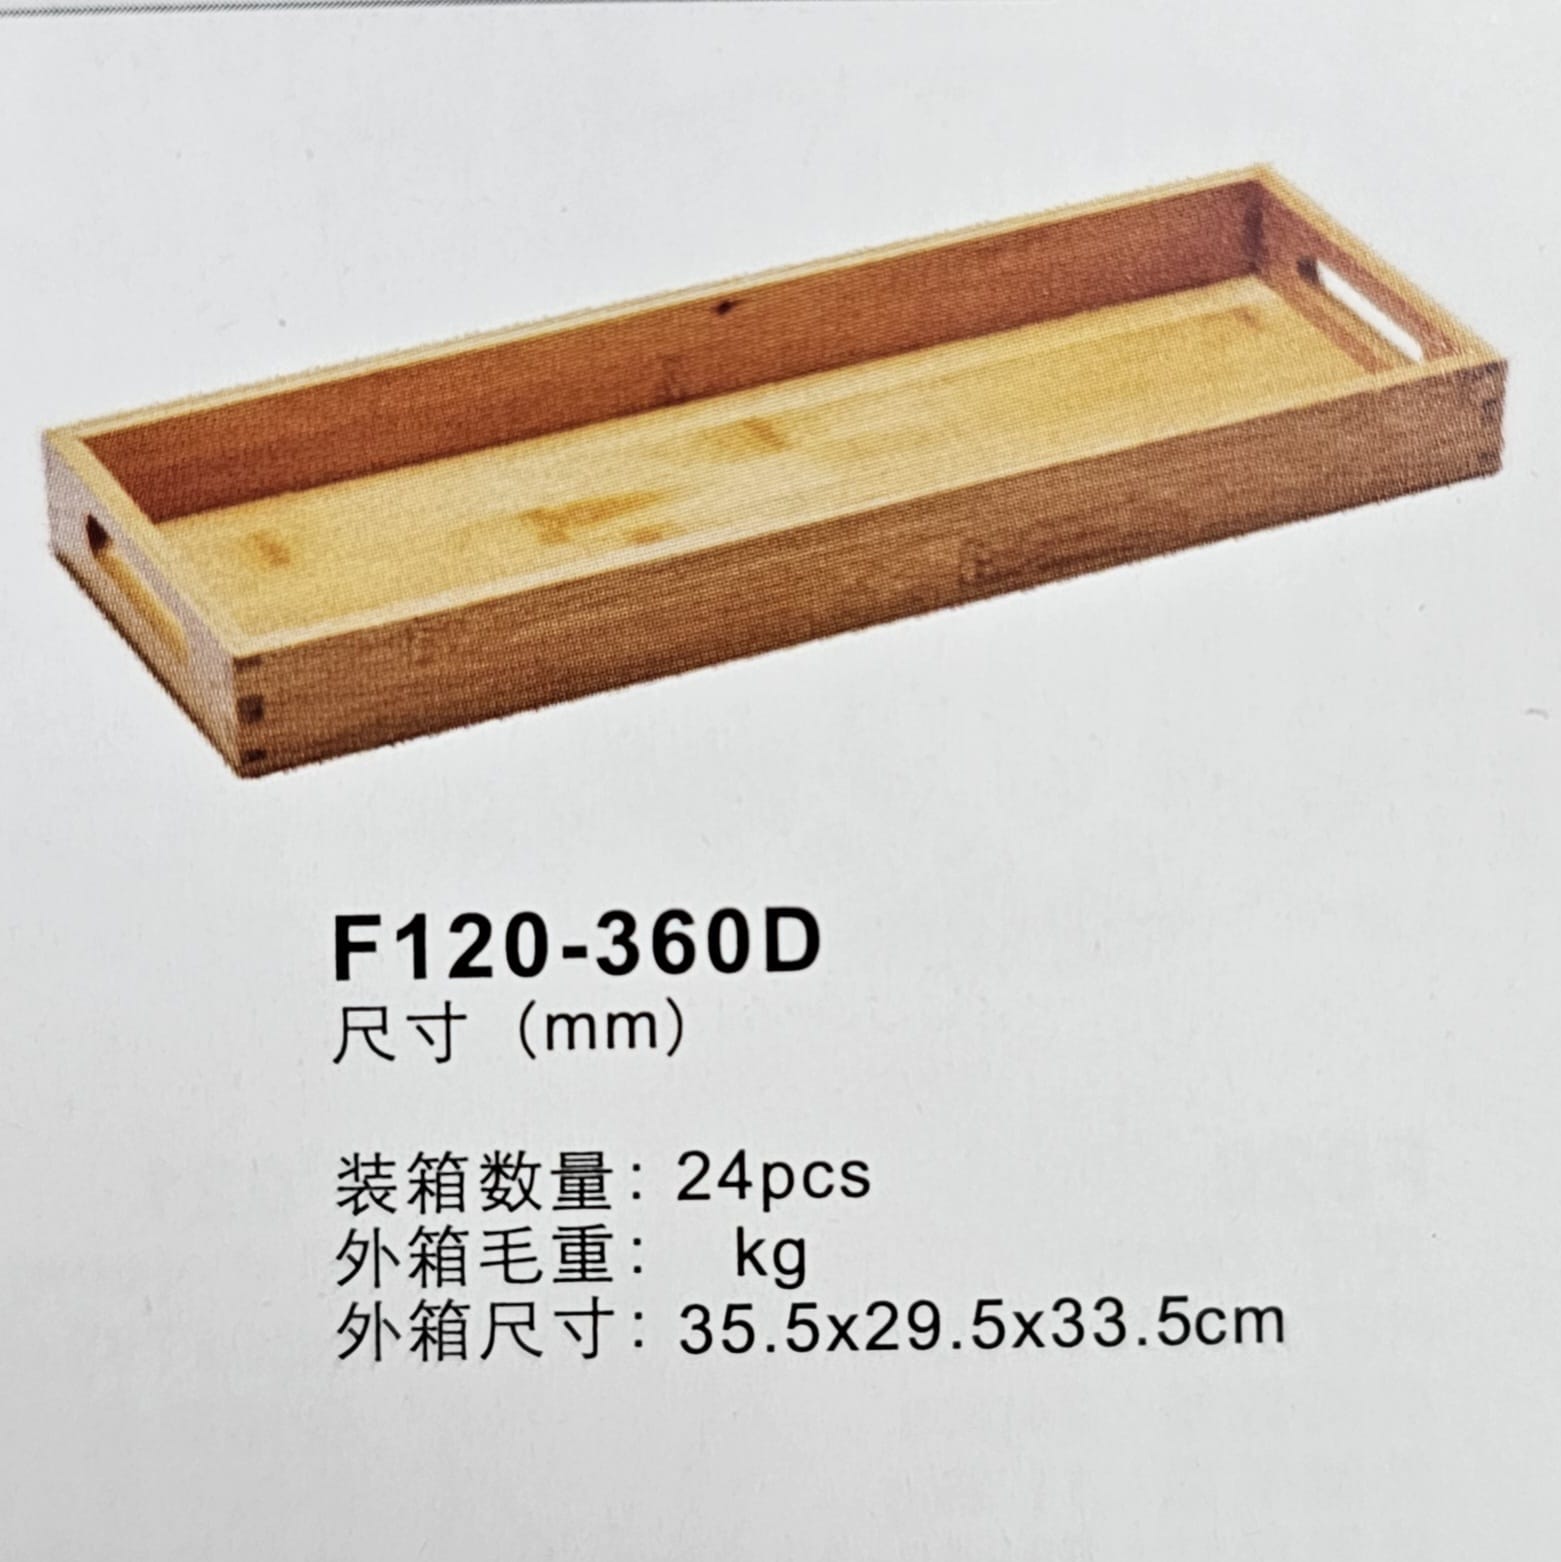 מגש עץ עם ידיות ‎ 36X12X3.5H ס"מ